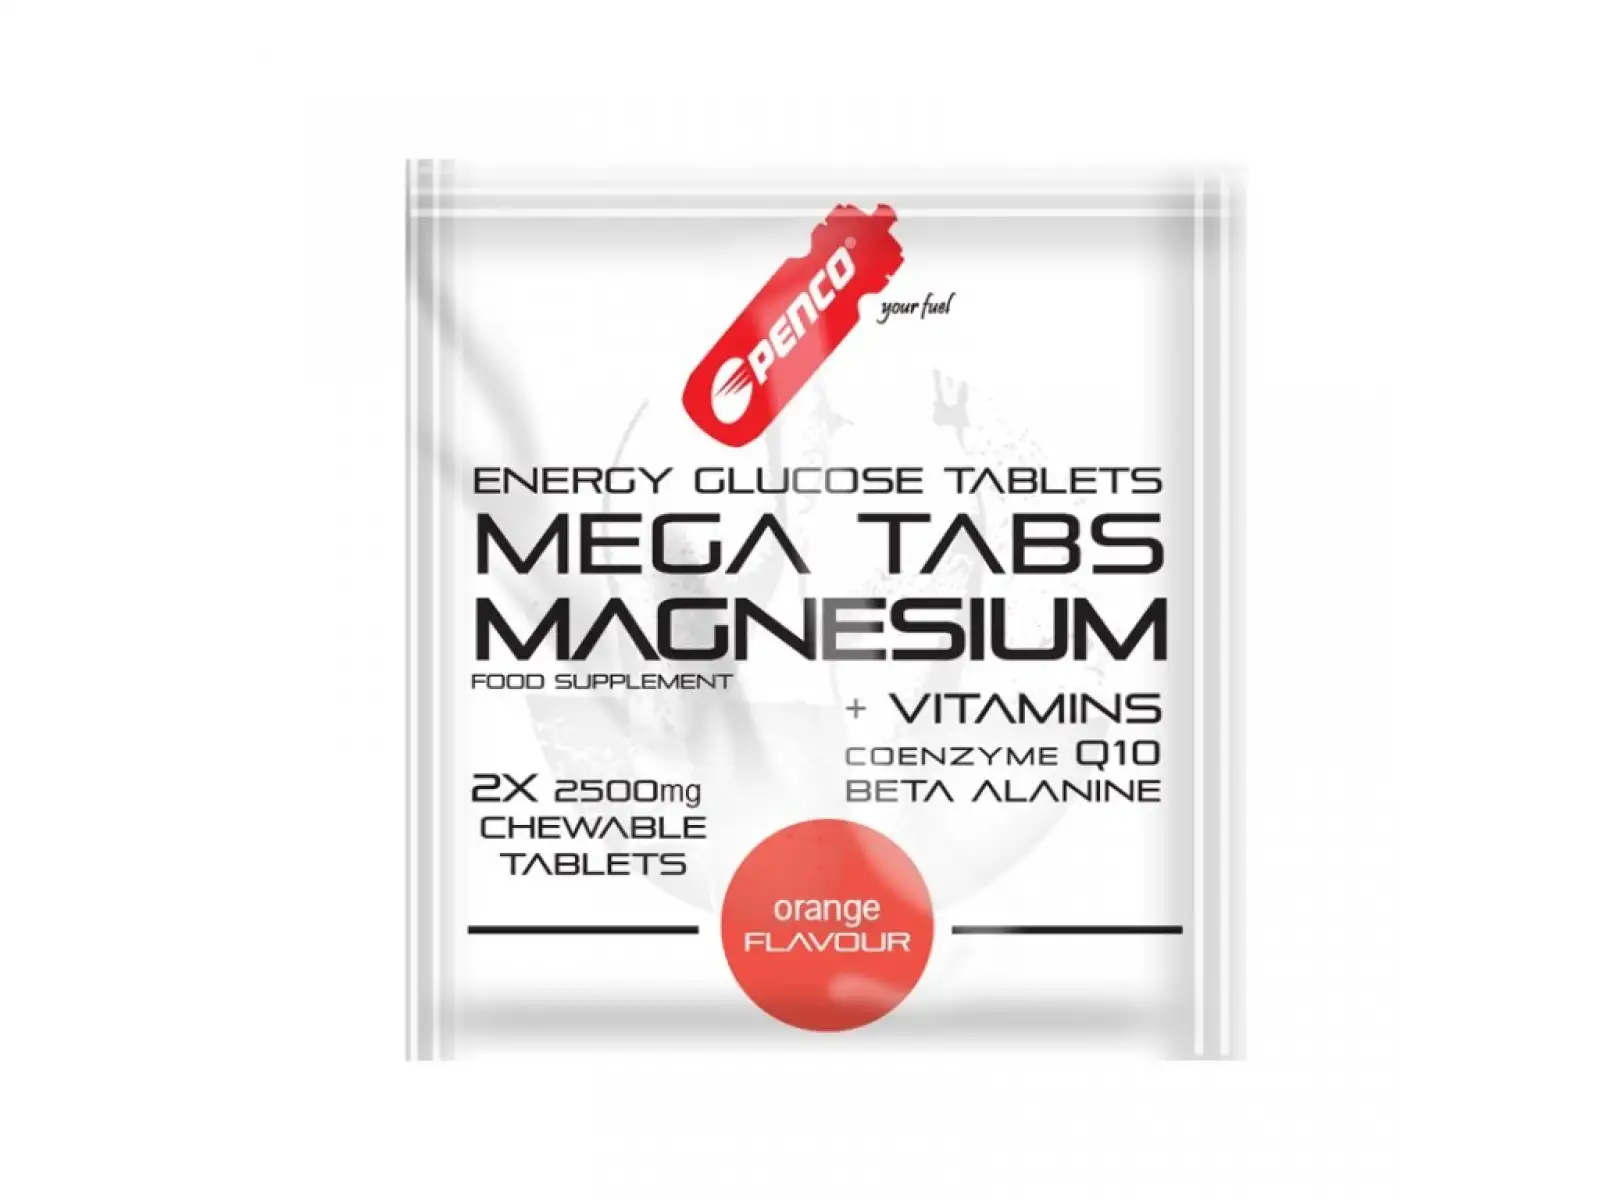 Penco Mega Tabs Magnesium 2 tablety